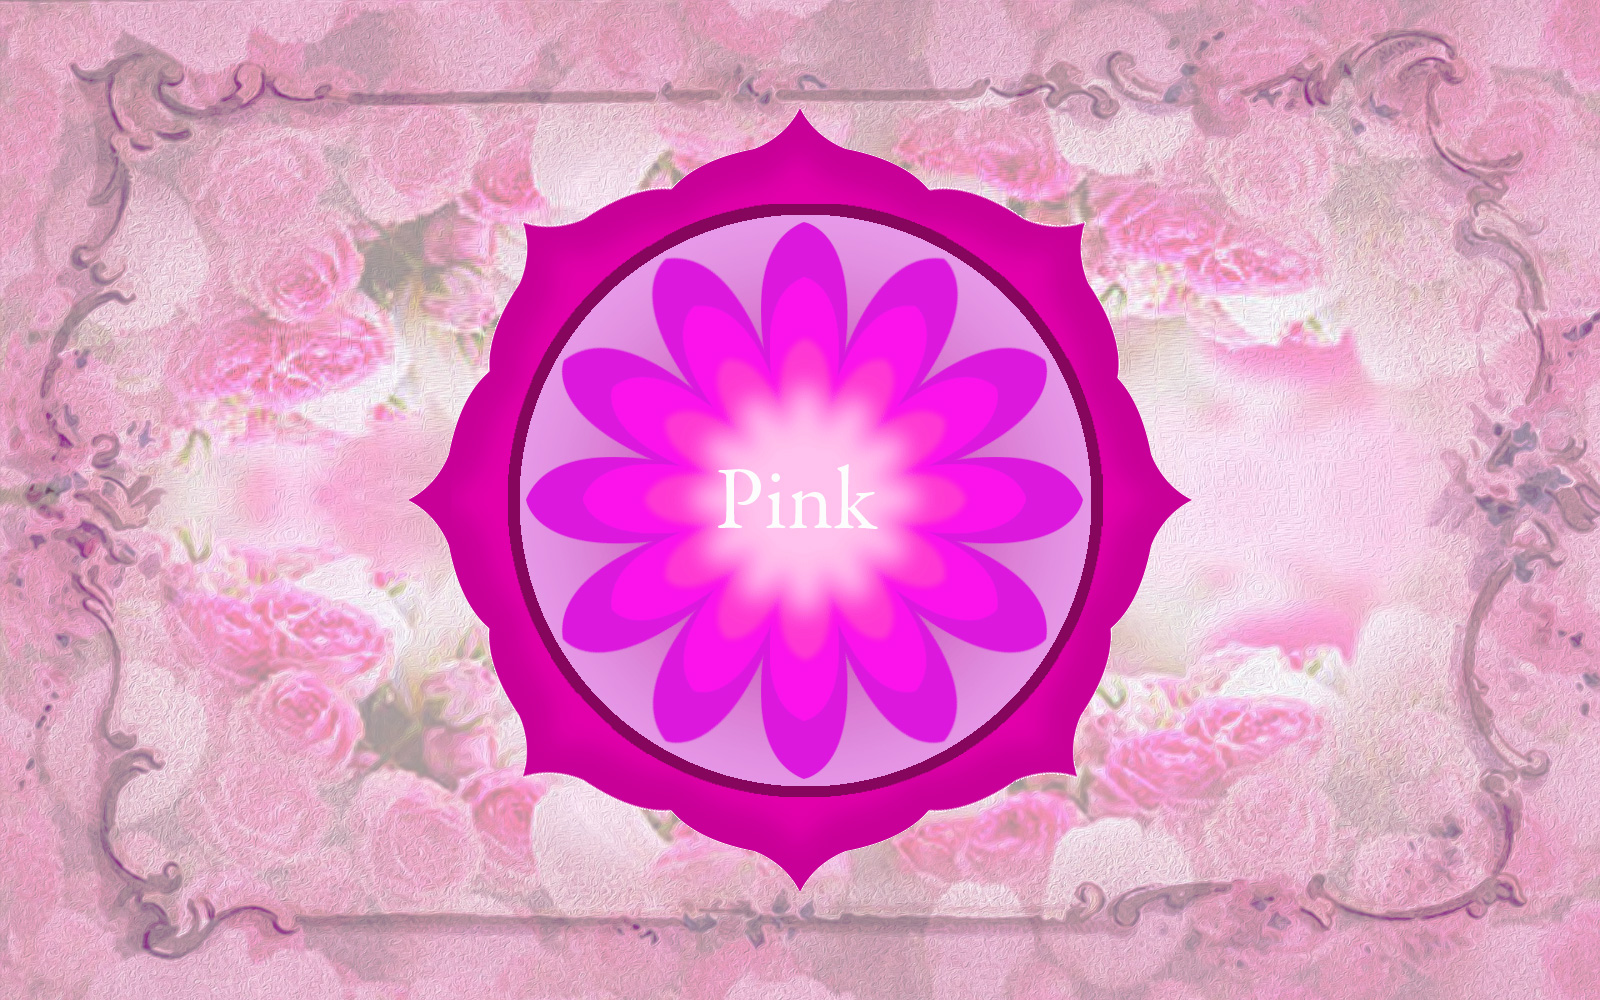 ピンクの色の意味や天然石について